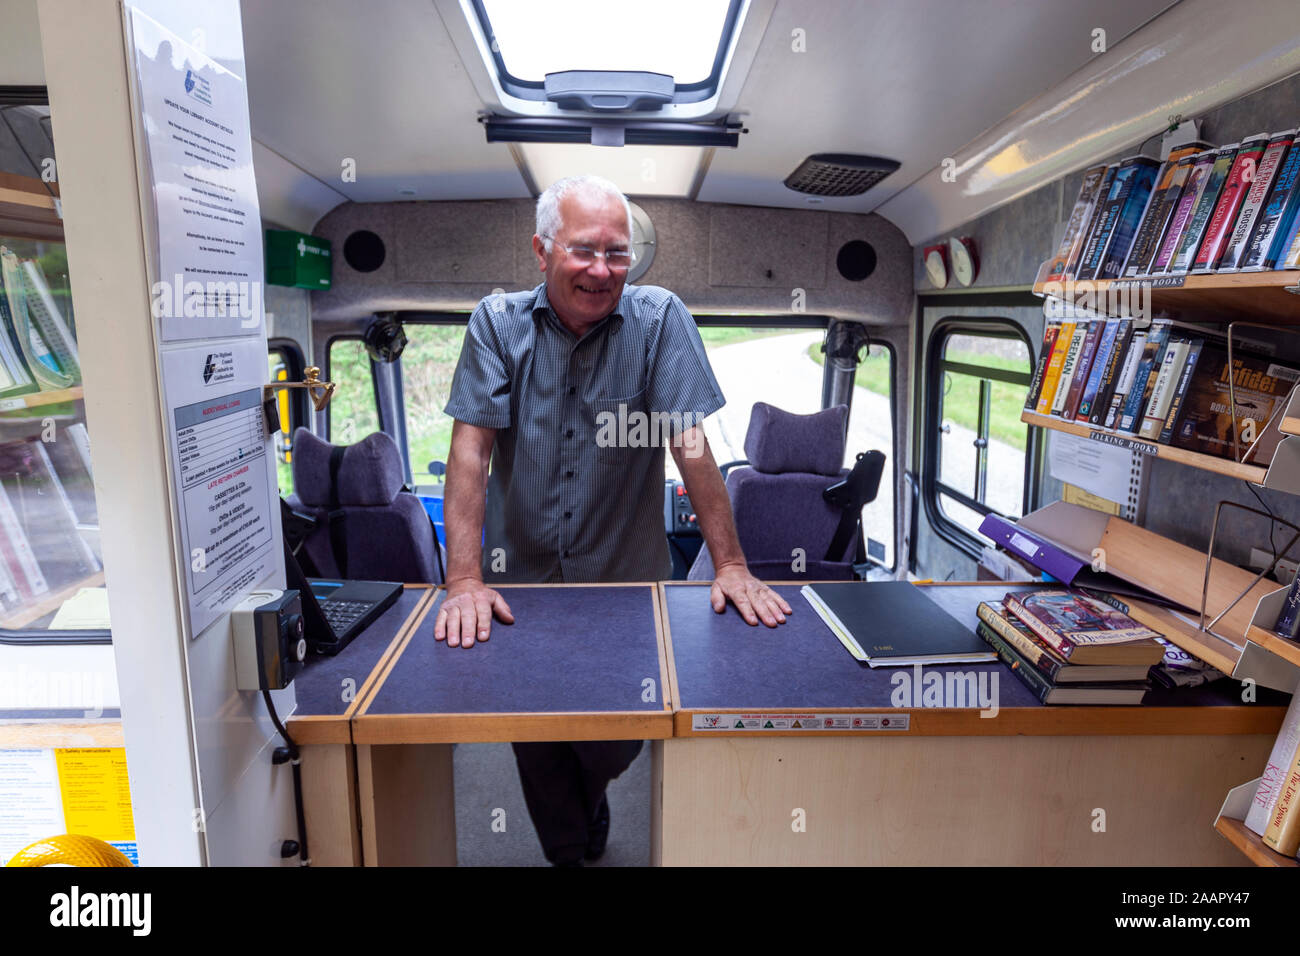 Driver e bibliotecario in Highland librerie, van biblioteca mobile in Scozia, Regno Unito Foto Stock